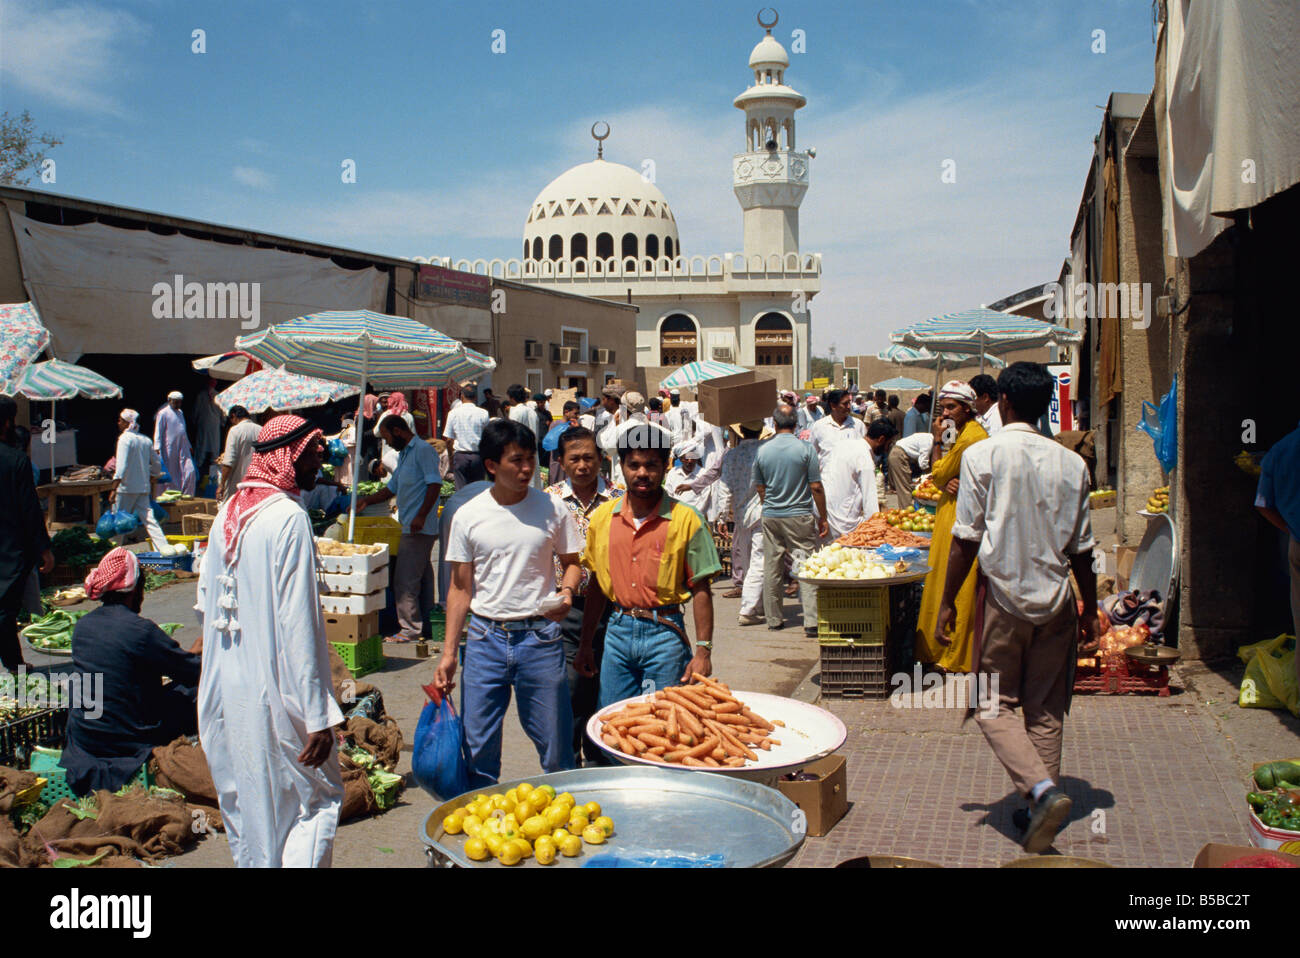 Souk aux légumes avec derrière la Mosquée Abu Dhabi Emirats Arabes Unis Moyen-orient Banque D'Images